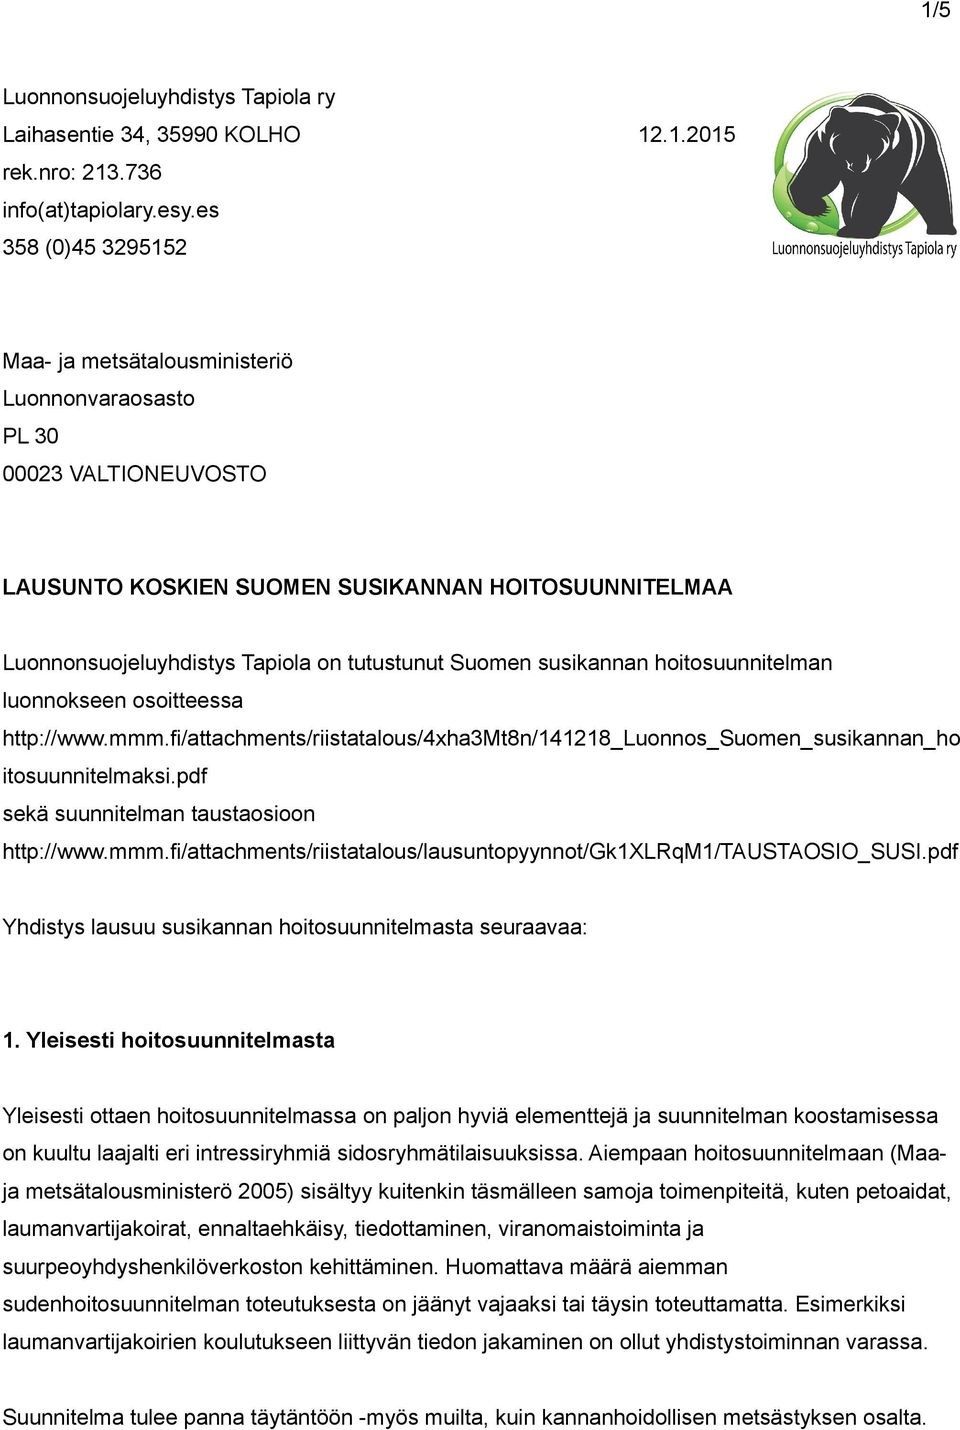 Suomen susikannan hoitosuunnitelman luonnokseen osoitteessa http://www.mmm.fi/attachments/riistatalous/4xha3mt8n/141218_luonnos_suomen_susikannan_ho itosuunnitelmaksi.